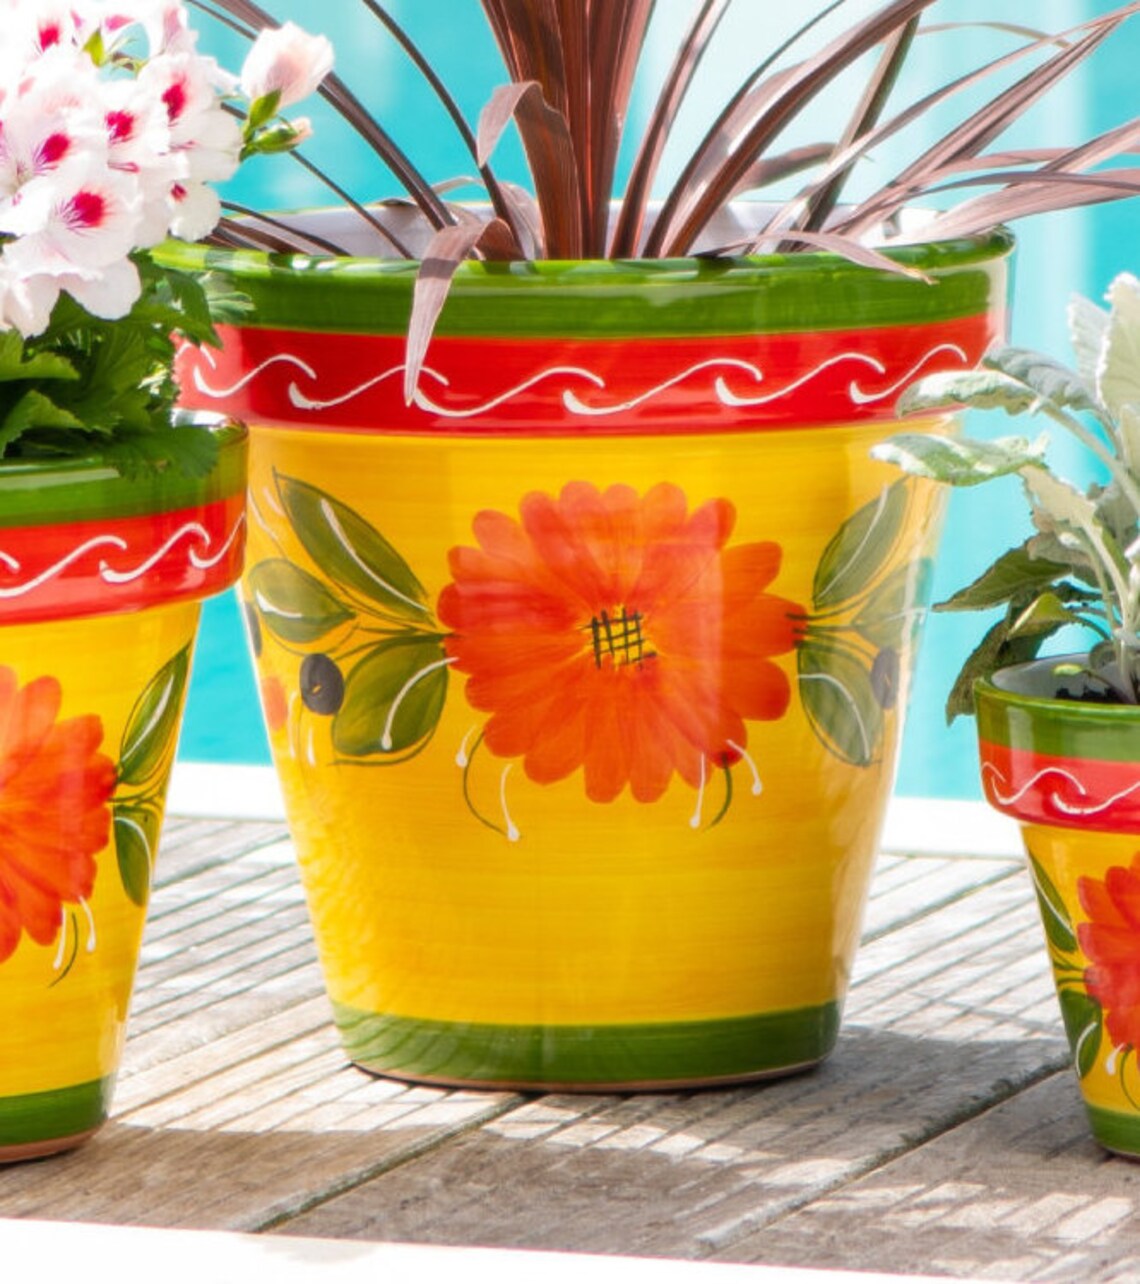 Sunshine Ceramica Olivar Design Pot Planter for outdoor or | Etsy